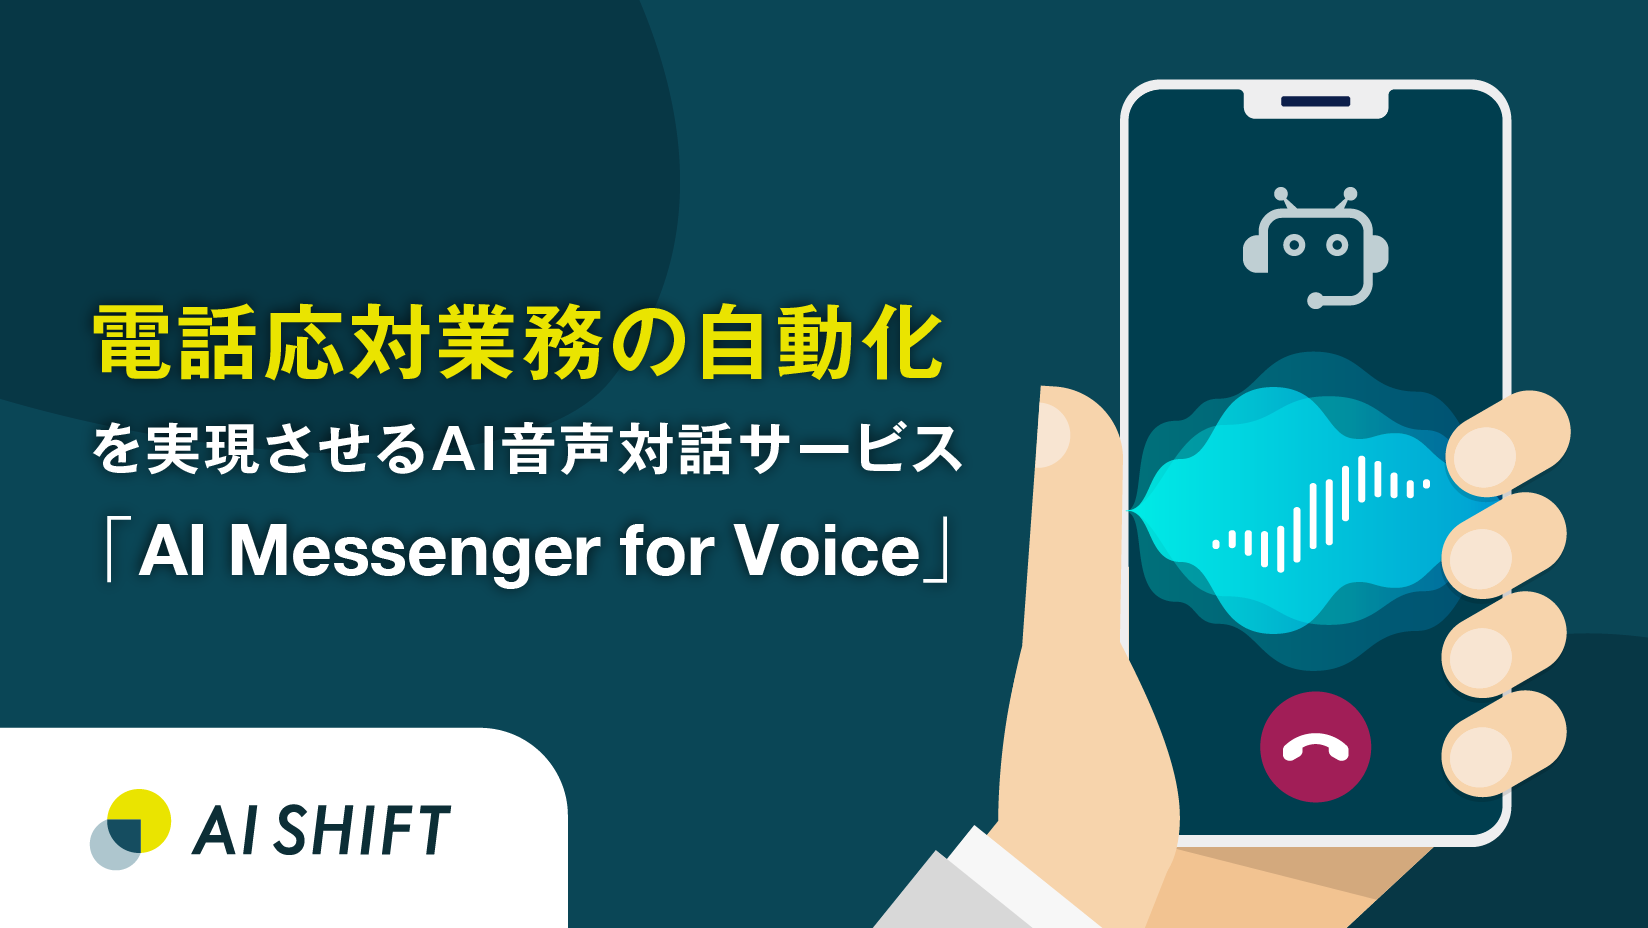 電話応対業務の自動化を実現させるAI音声対話サービス「AI Messenger for Voice」の提供を開始